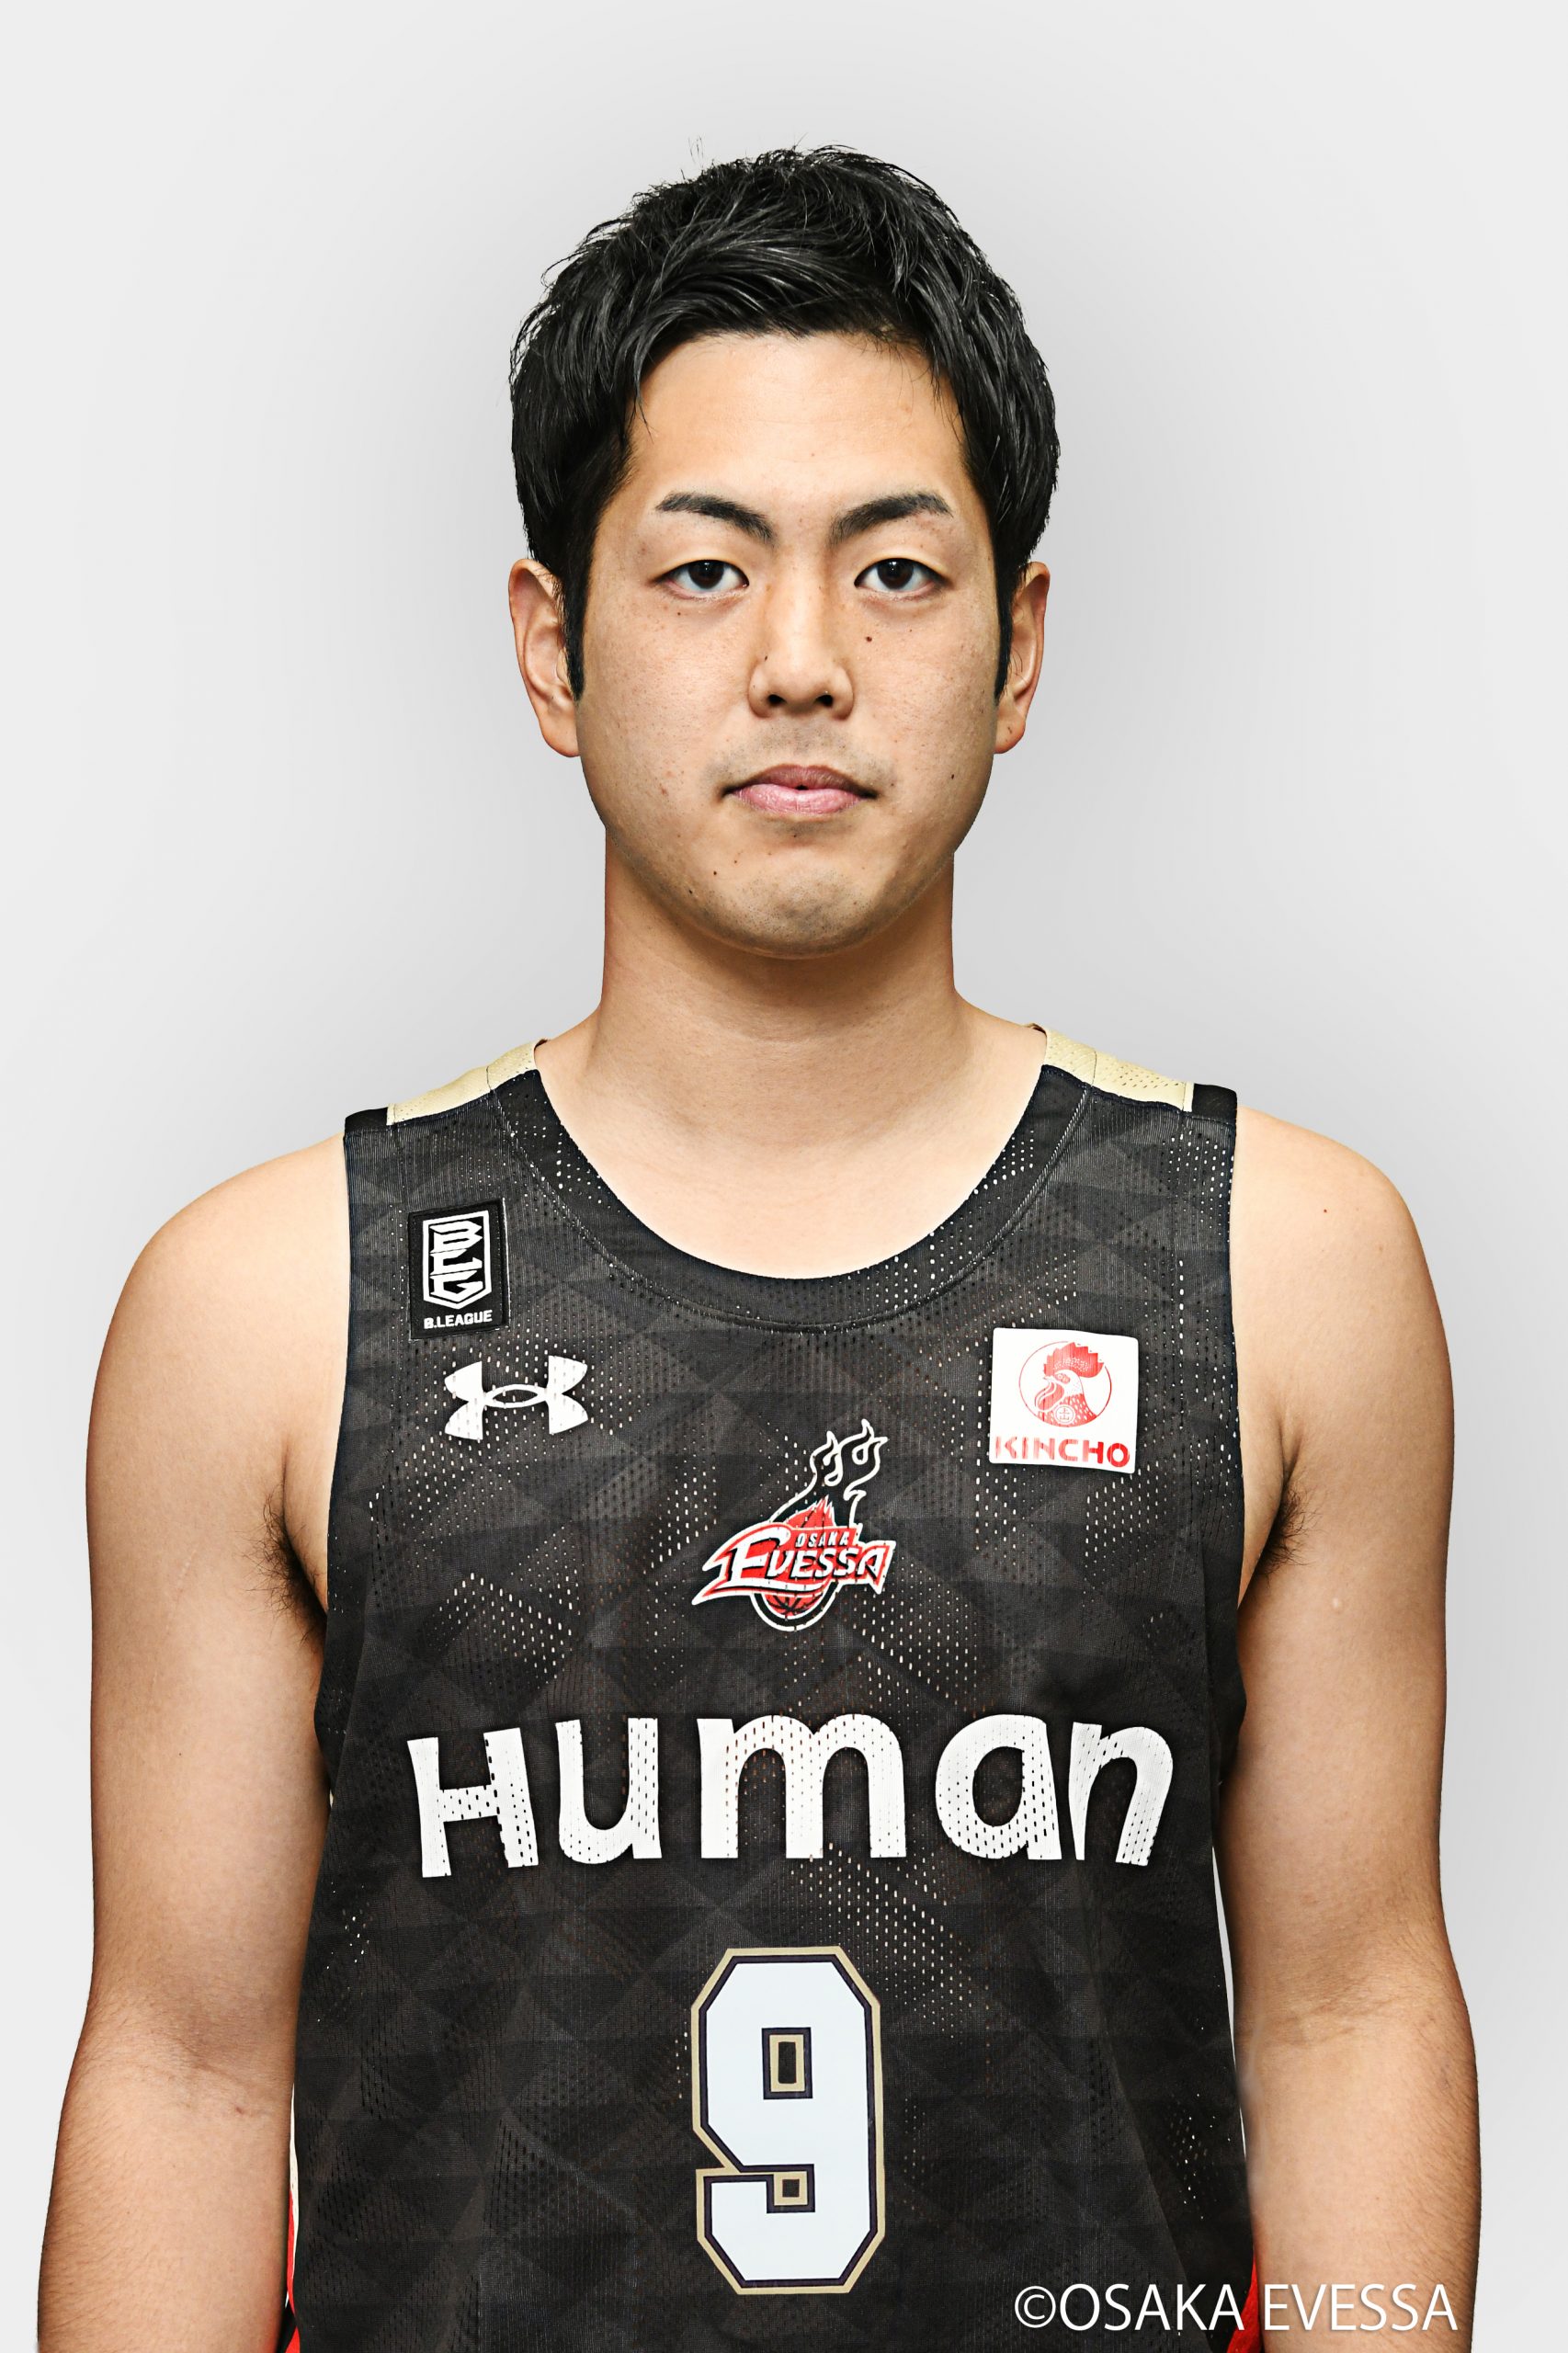 バスケットボール部男子 藤本巧太選手の 大阪エヴェッサ入団が決まりました 大阪体育大学